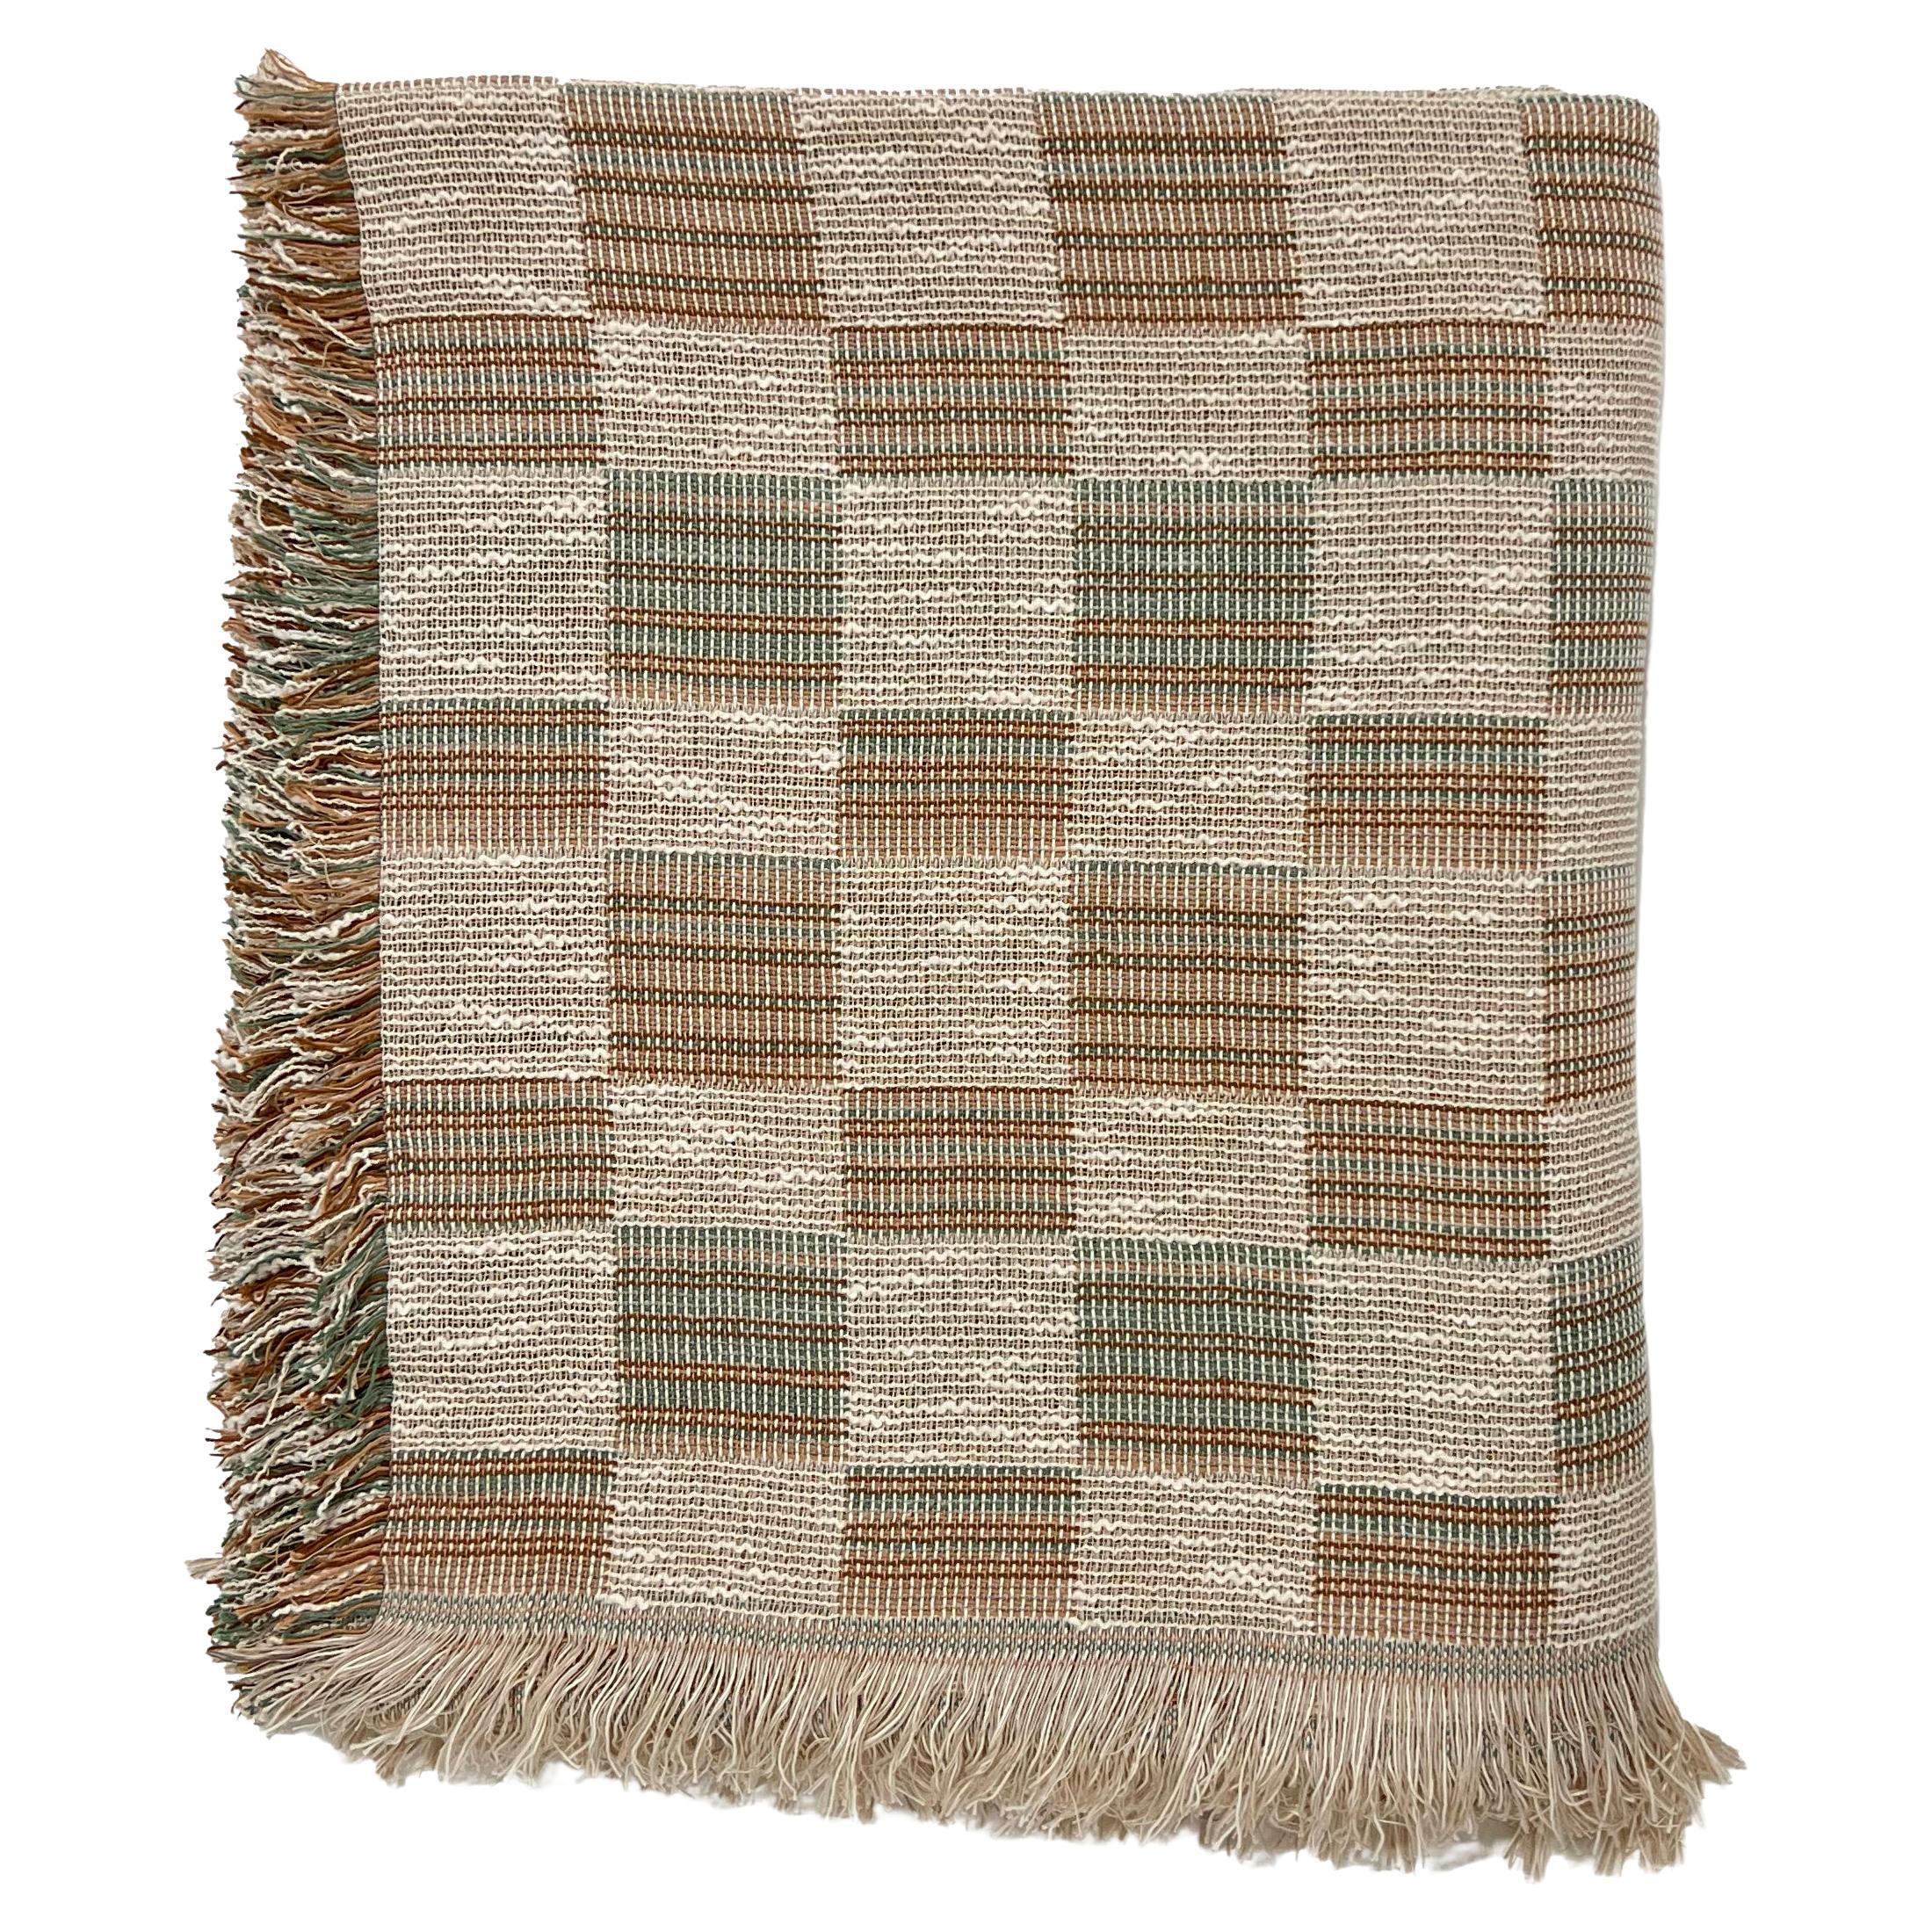 Gemusterte Überdeckendecke aus gewebter Baumwolle von Folk Textiles (Mariana / Sea)